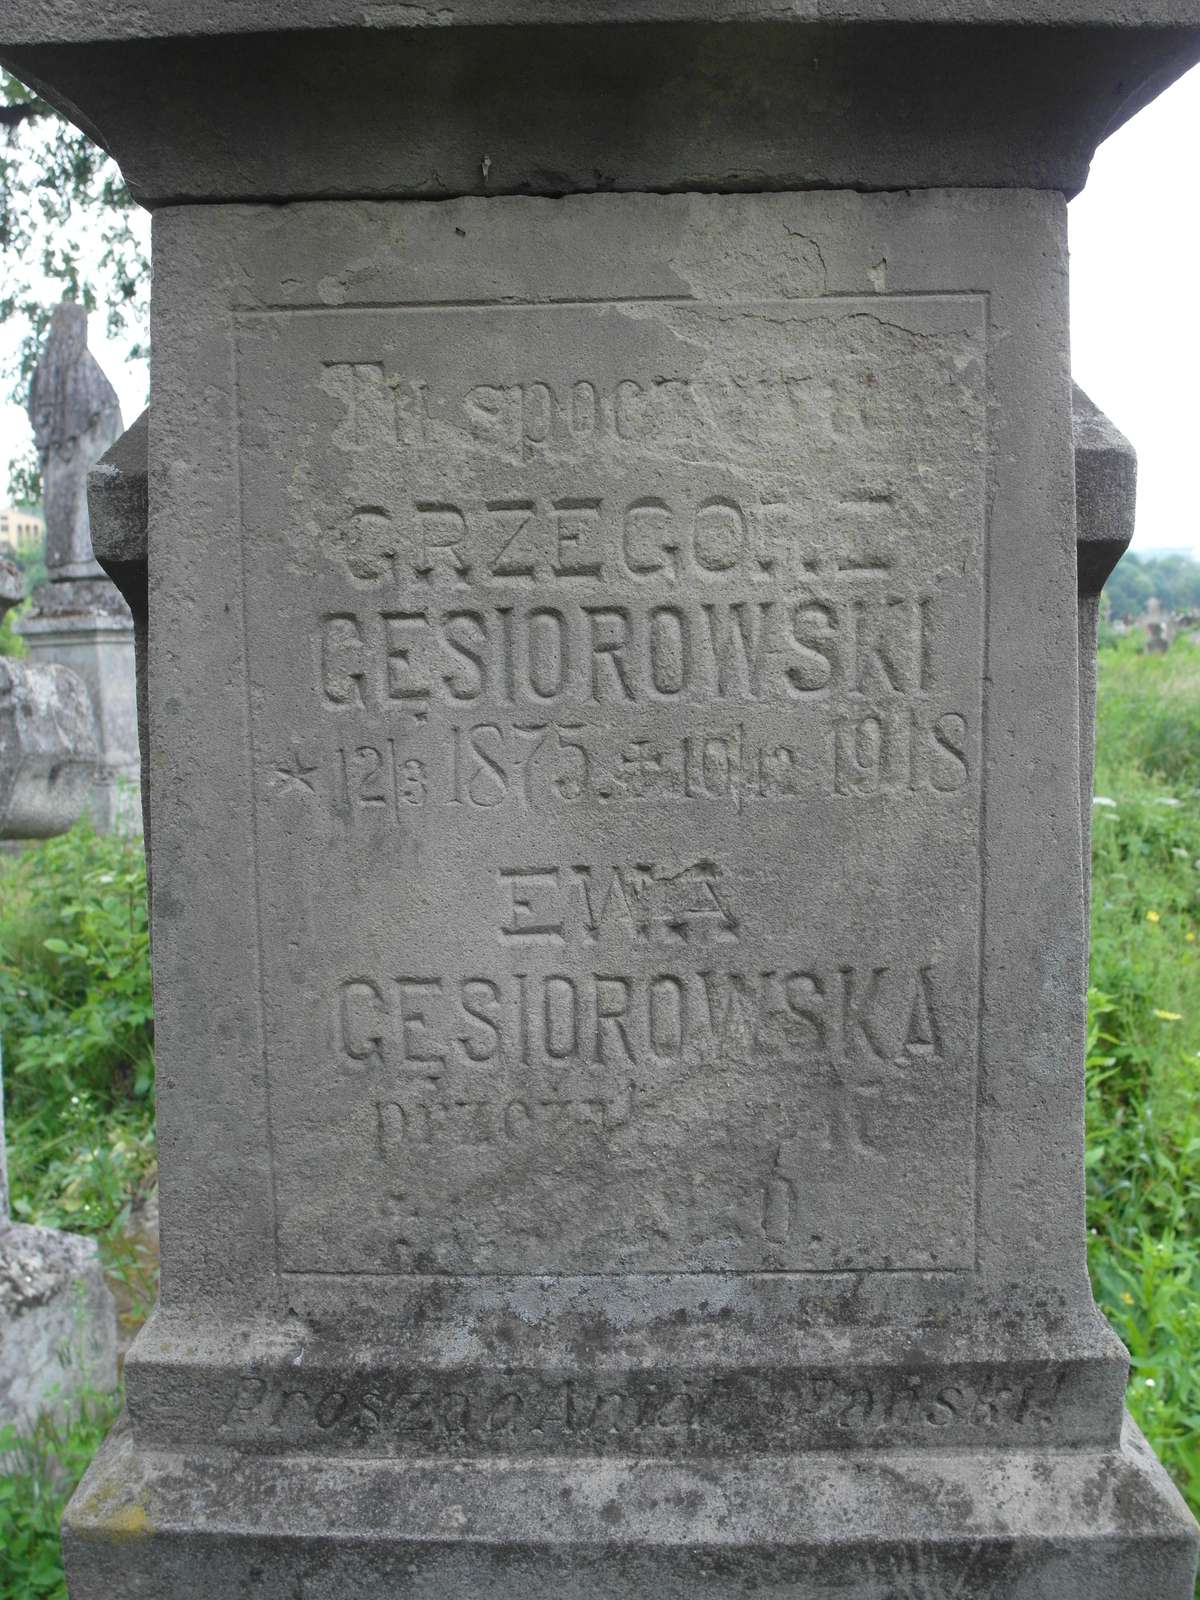 Inscription of the gravestone of Ewa and Grzegorz Gęsiorowski, Zbarazh cemetery, as of 2018